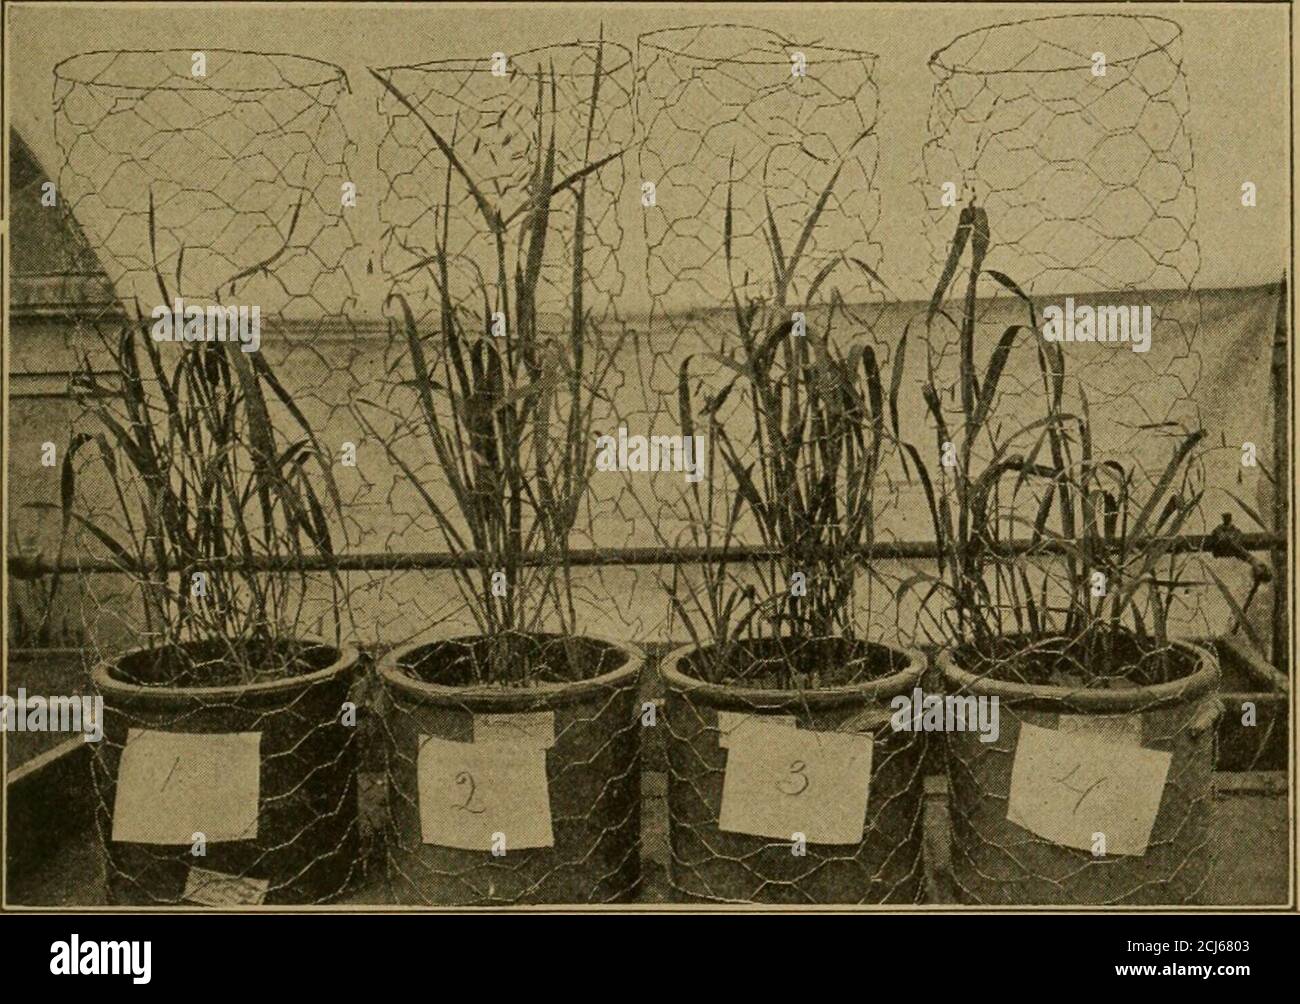 Böden und Düngemittel . ly in Böden gefunden, außer wenn sie mit Wasser  gesättigt. Pflanzen wie Reis, die auf wasserbedecktem Boden wachsen, können  Ammoniak verwenden; tatsächlich ist Reis gefunden worden, um